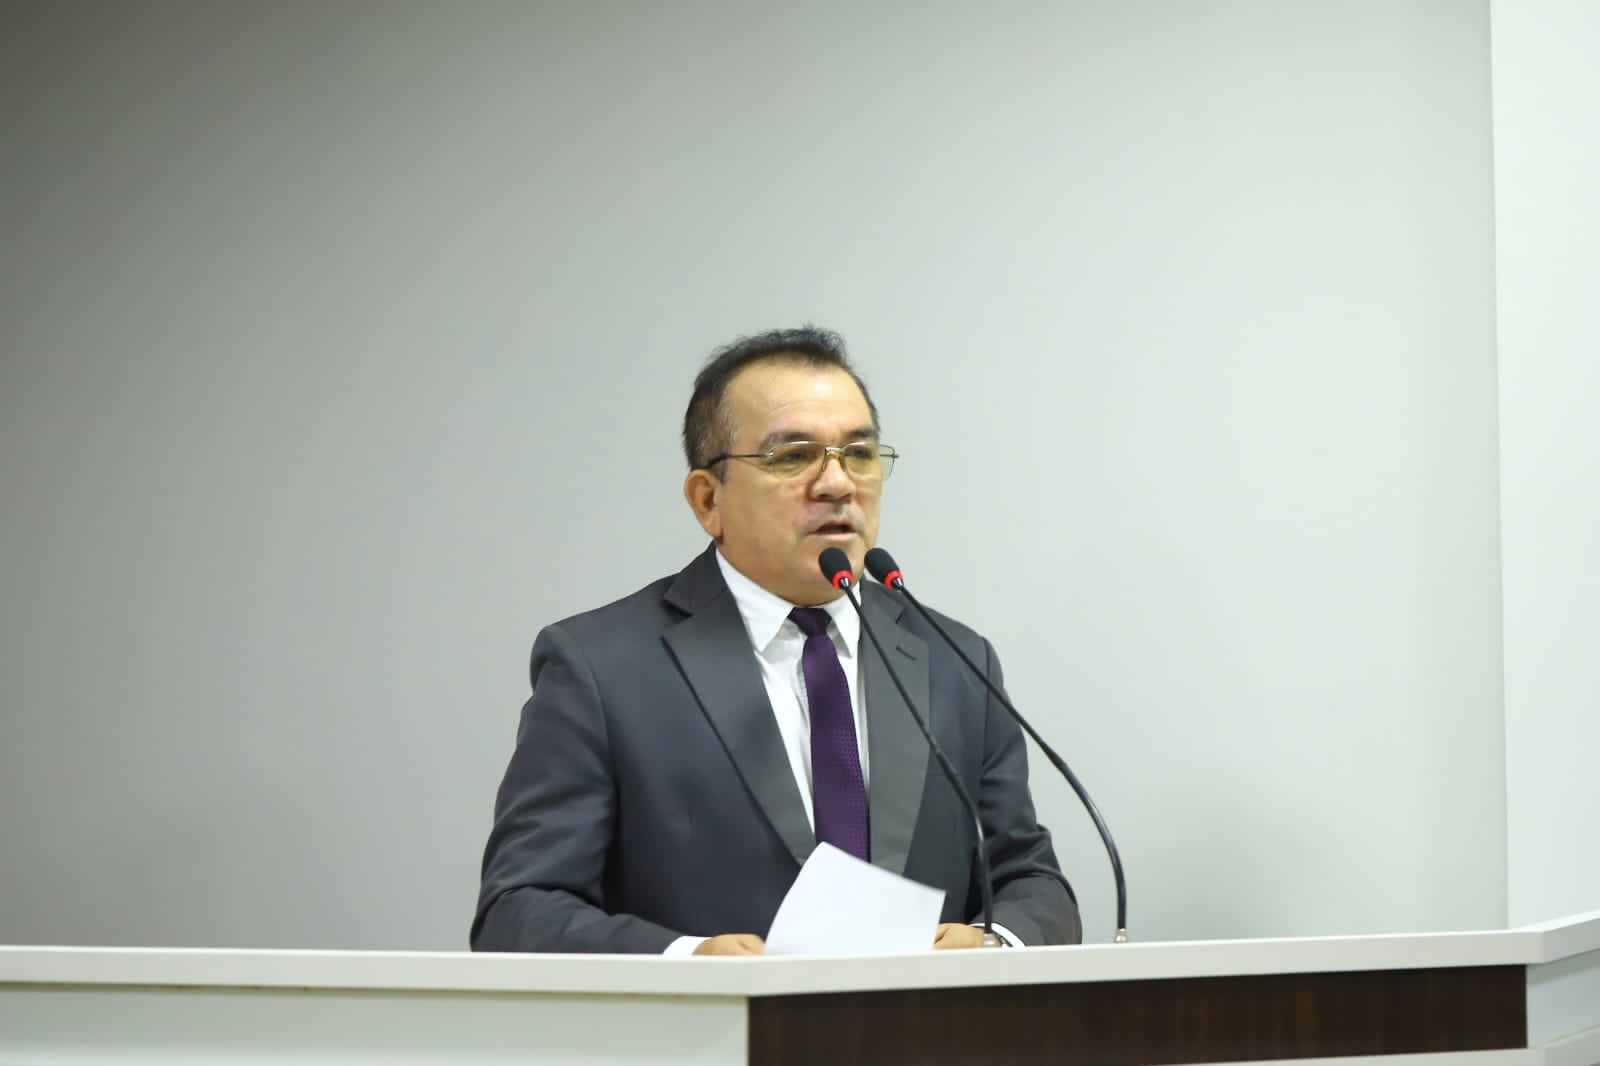 Massilon pede informações sobre contrato da Prefeitura de mais de 4 milhões com Fundação de Minas Gerais